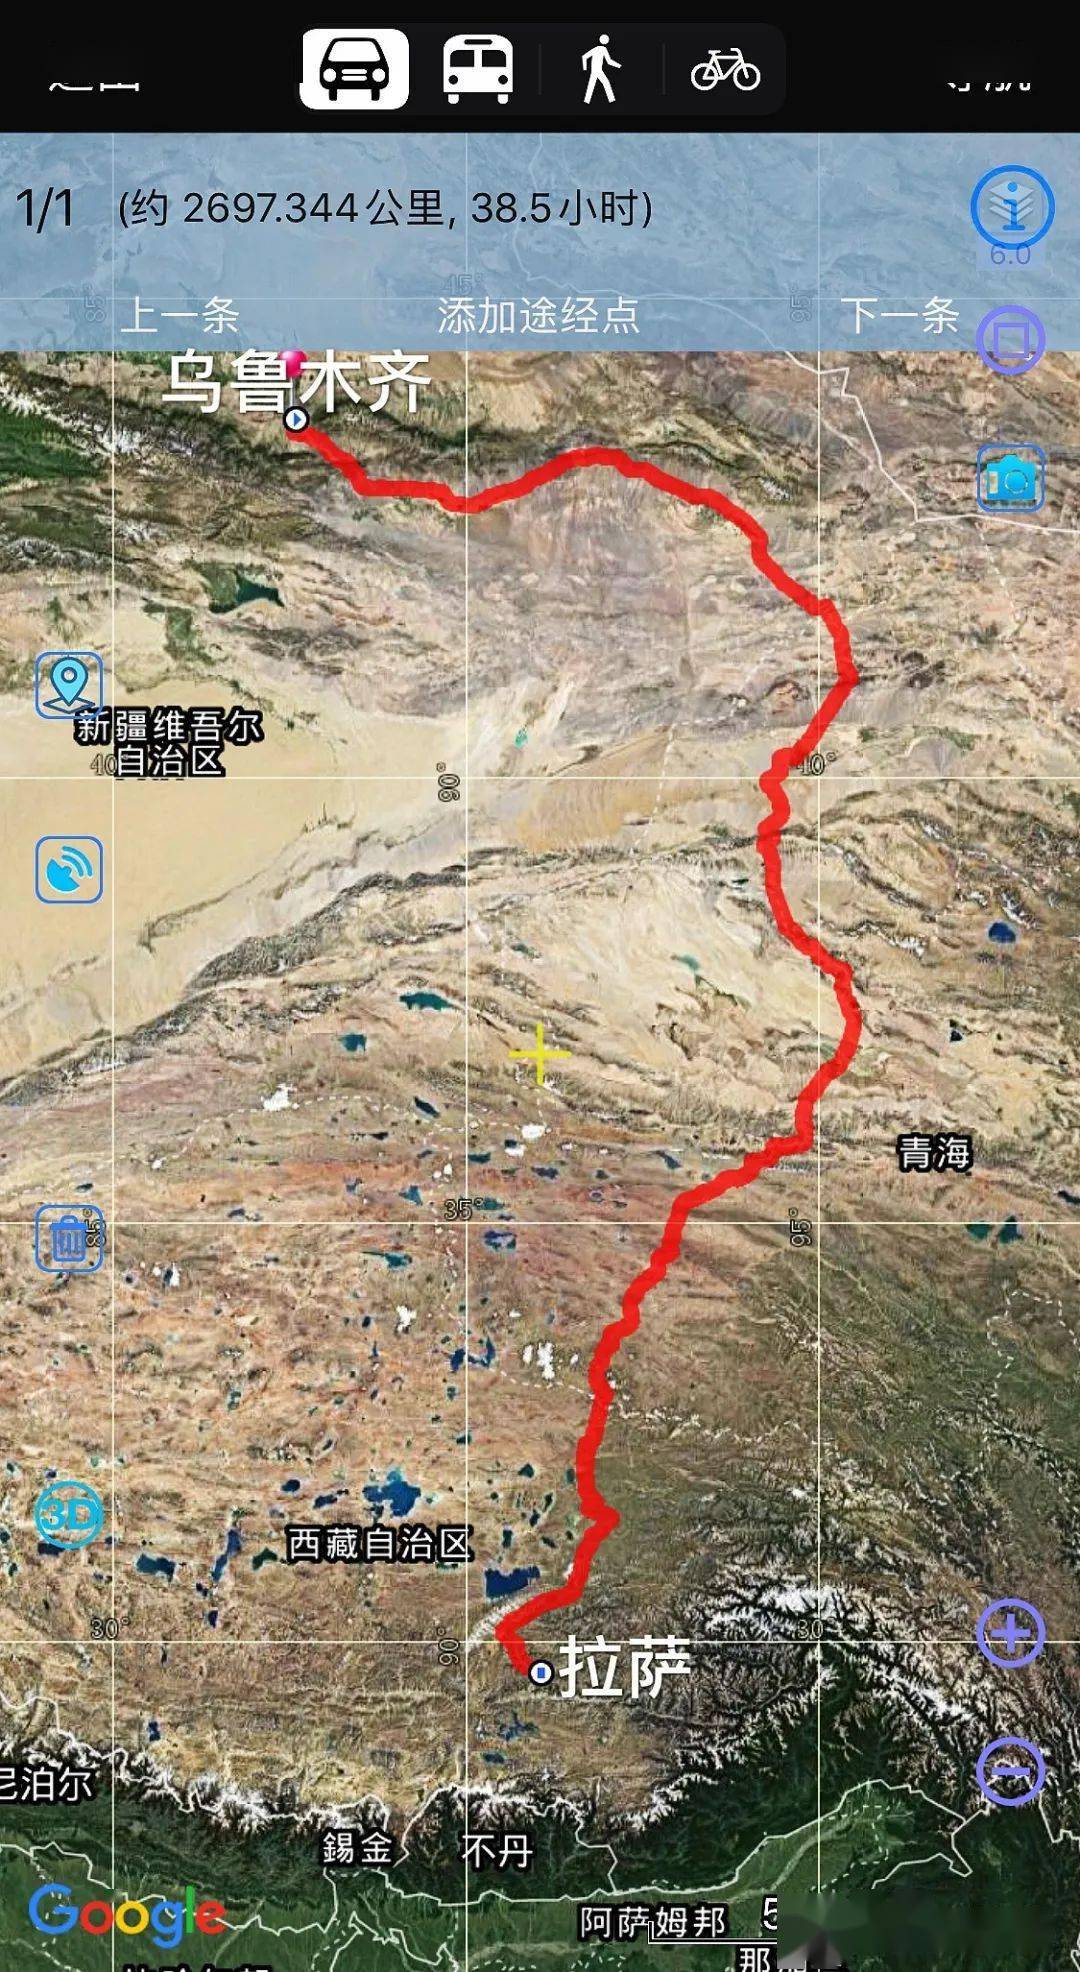 时事地理 | 大漠新丝路——格库铁路